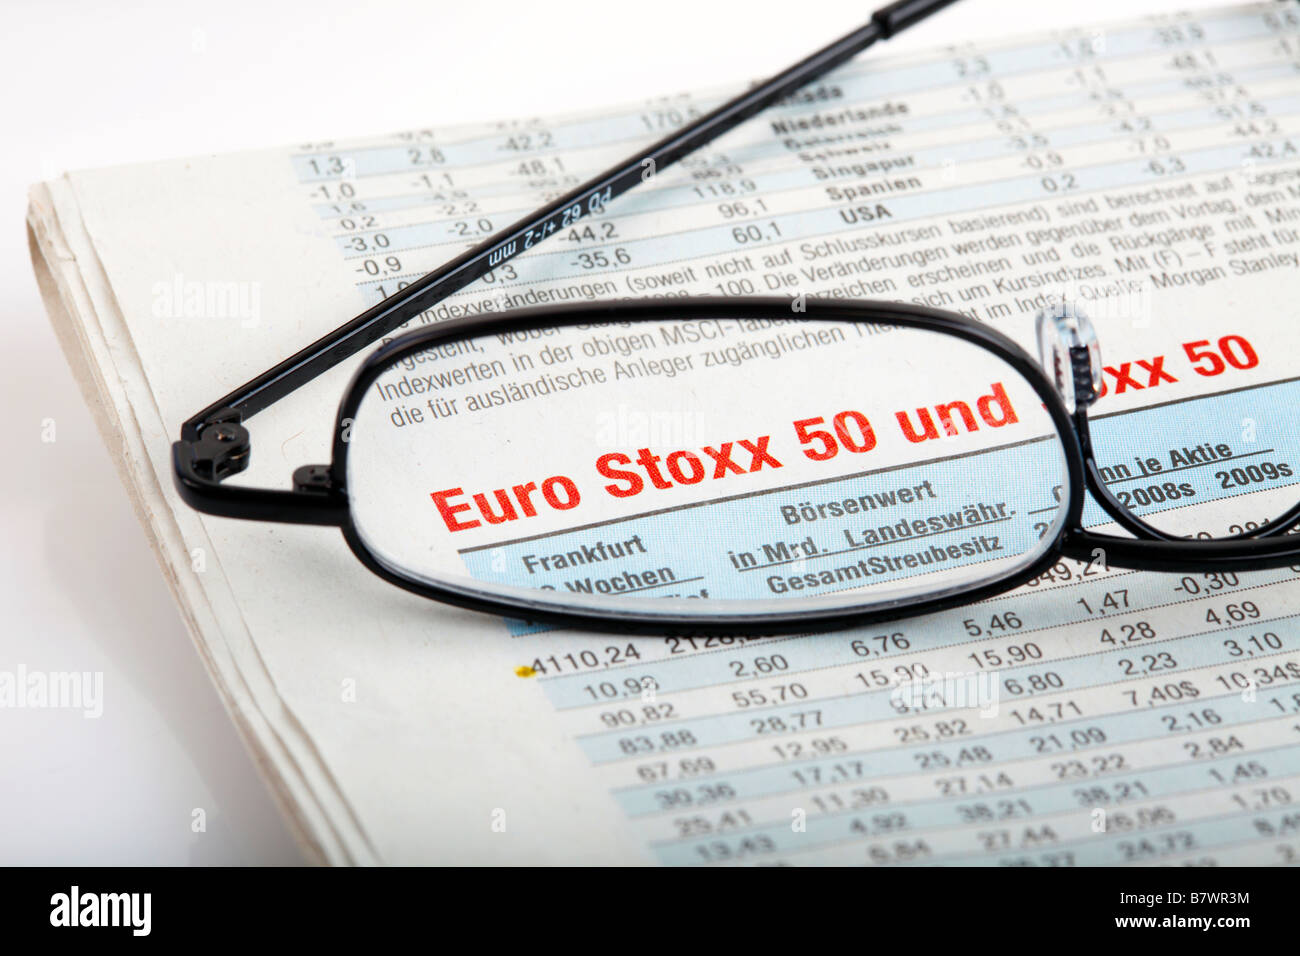 EURO STOXX 50 Stock Photo